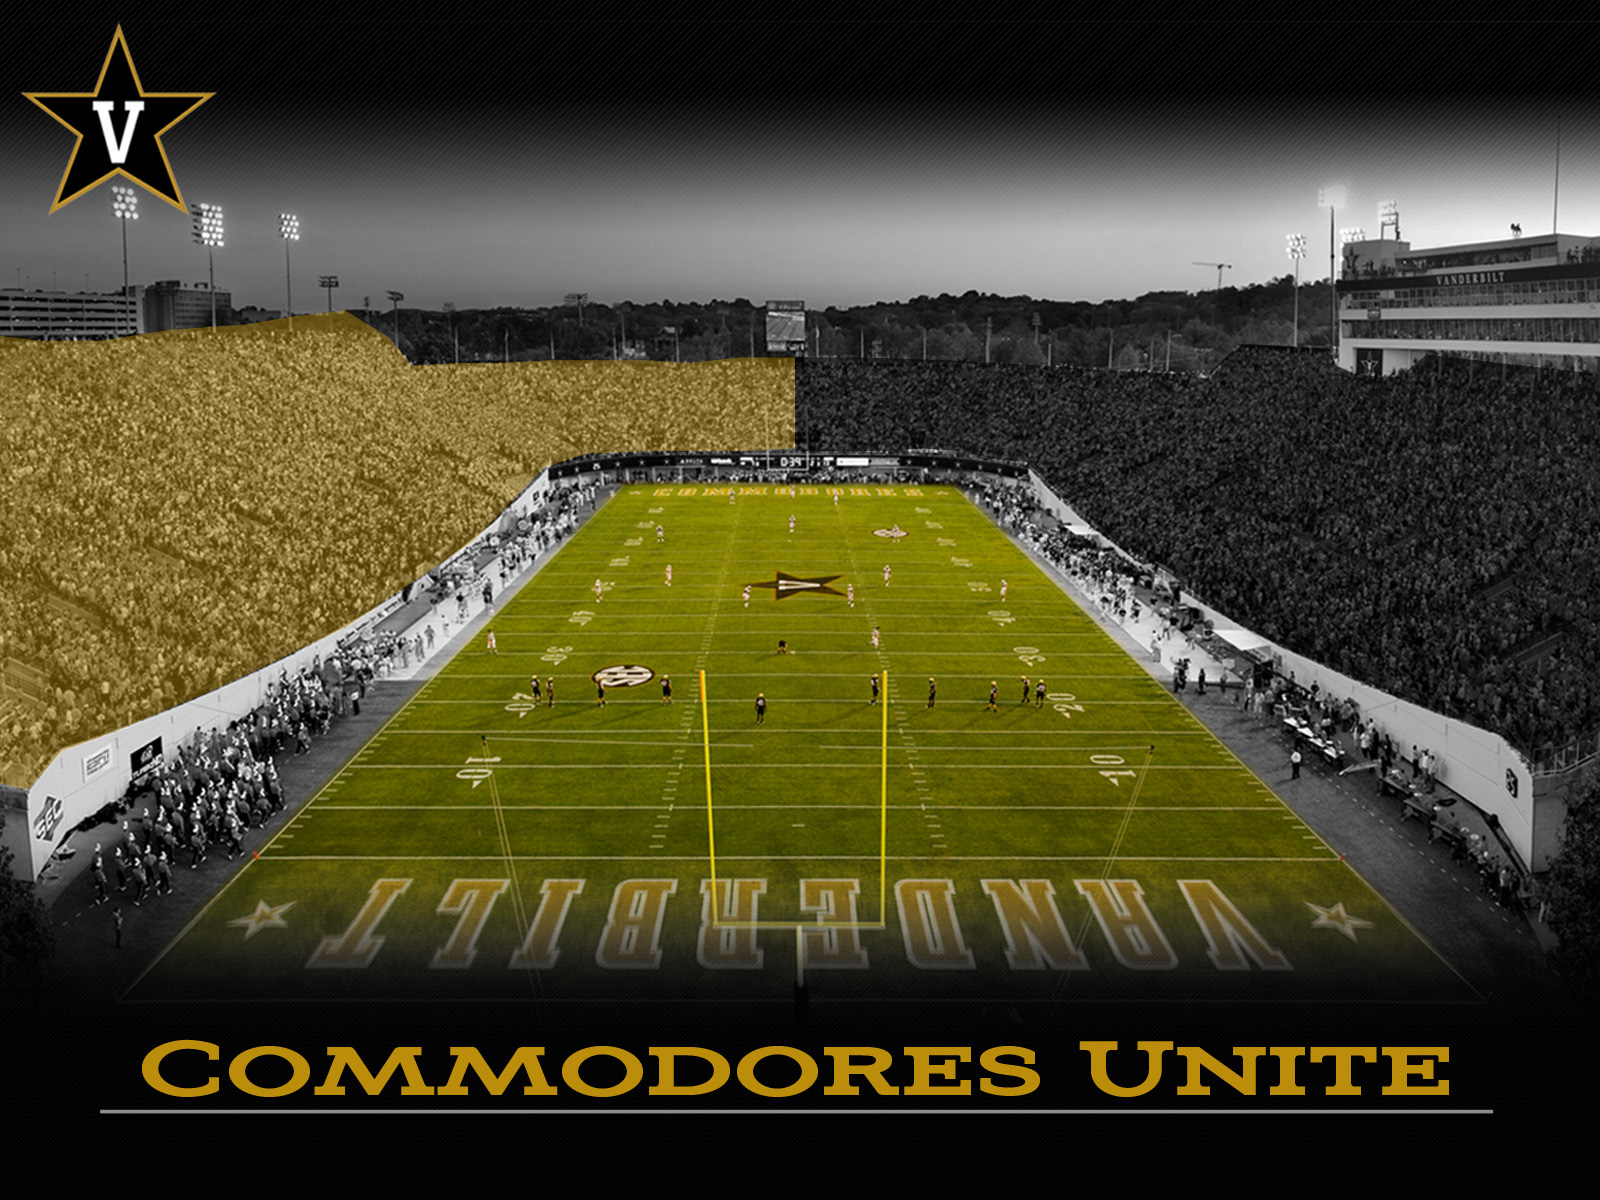 Unite on game week - Vanderbilt Official Athletic Site